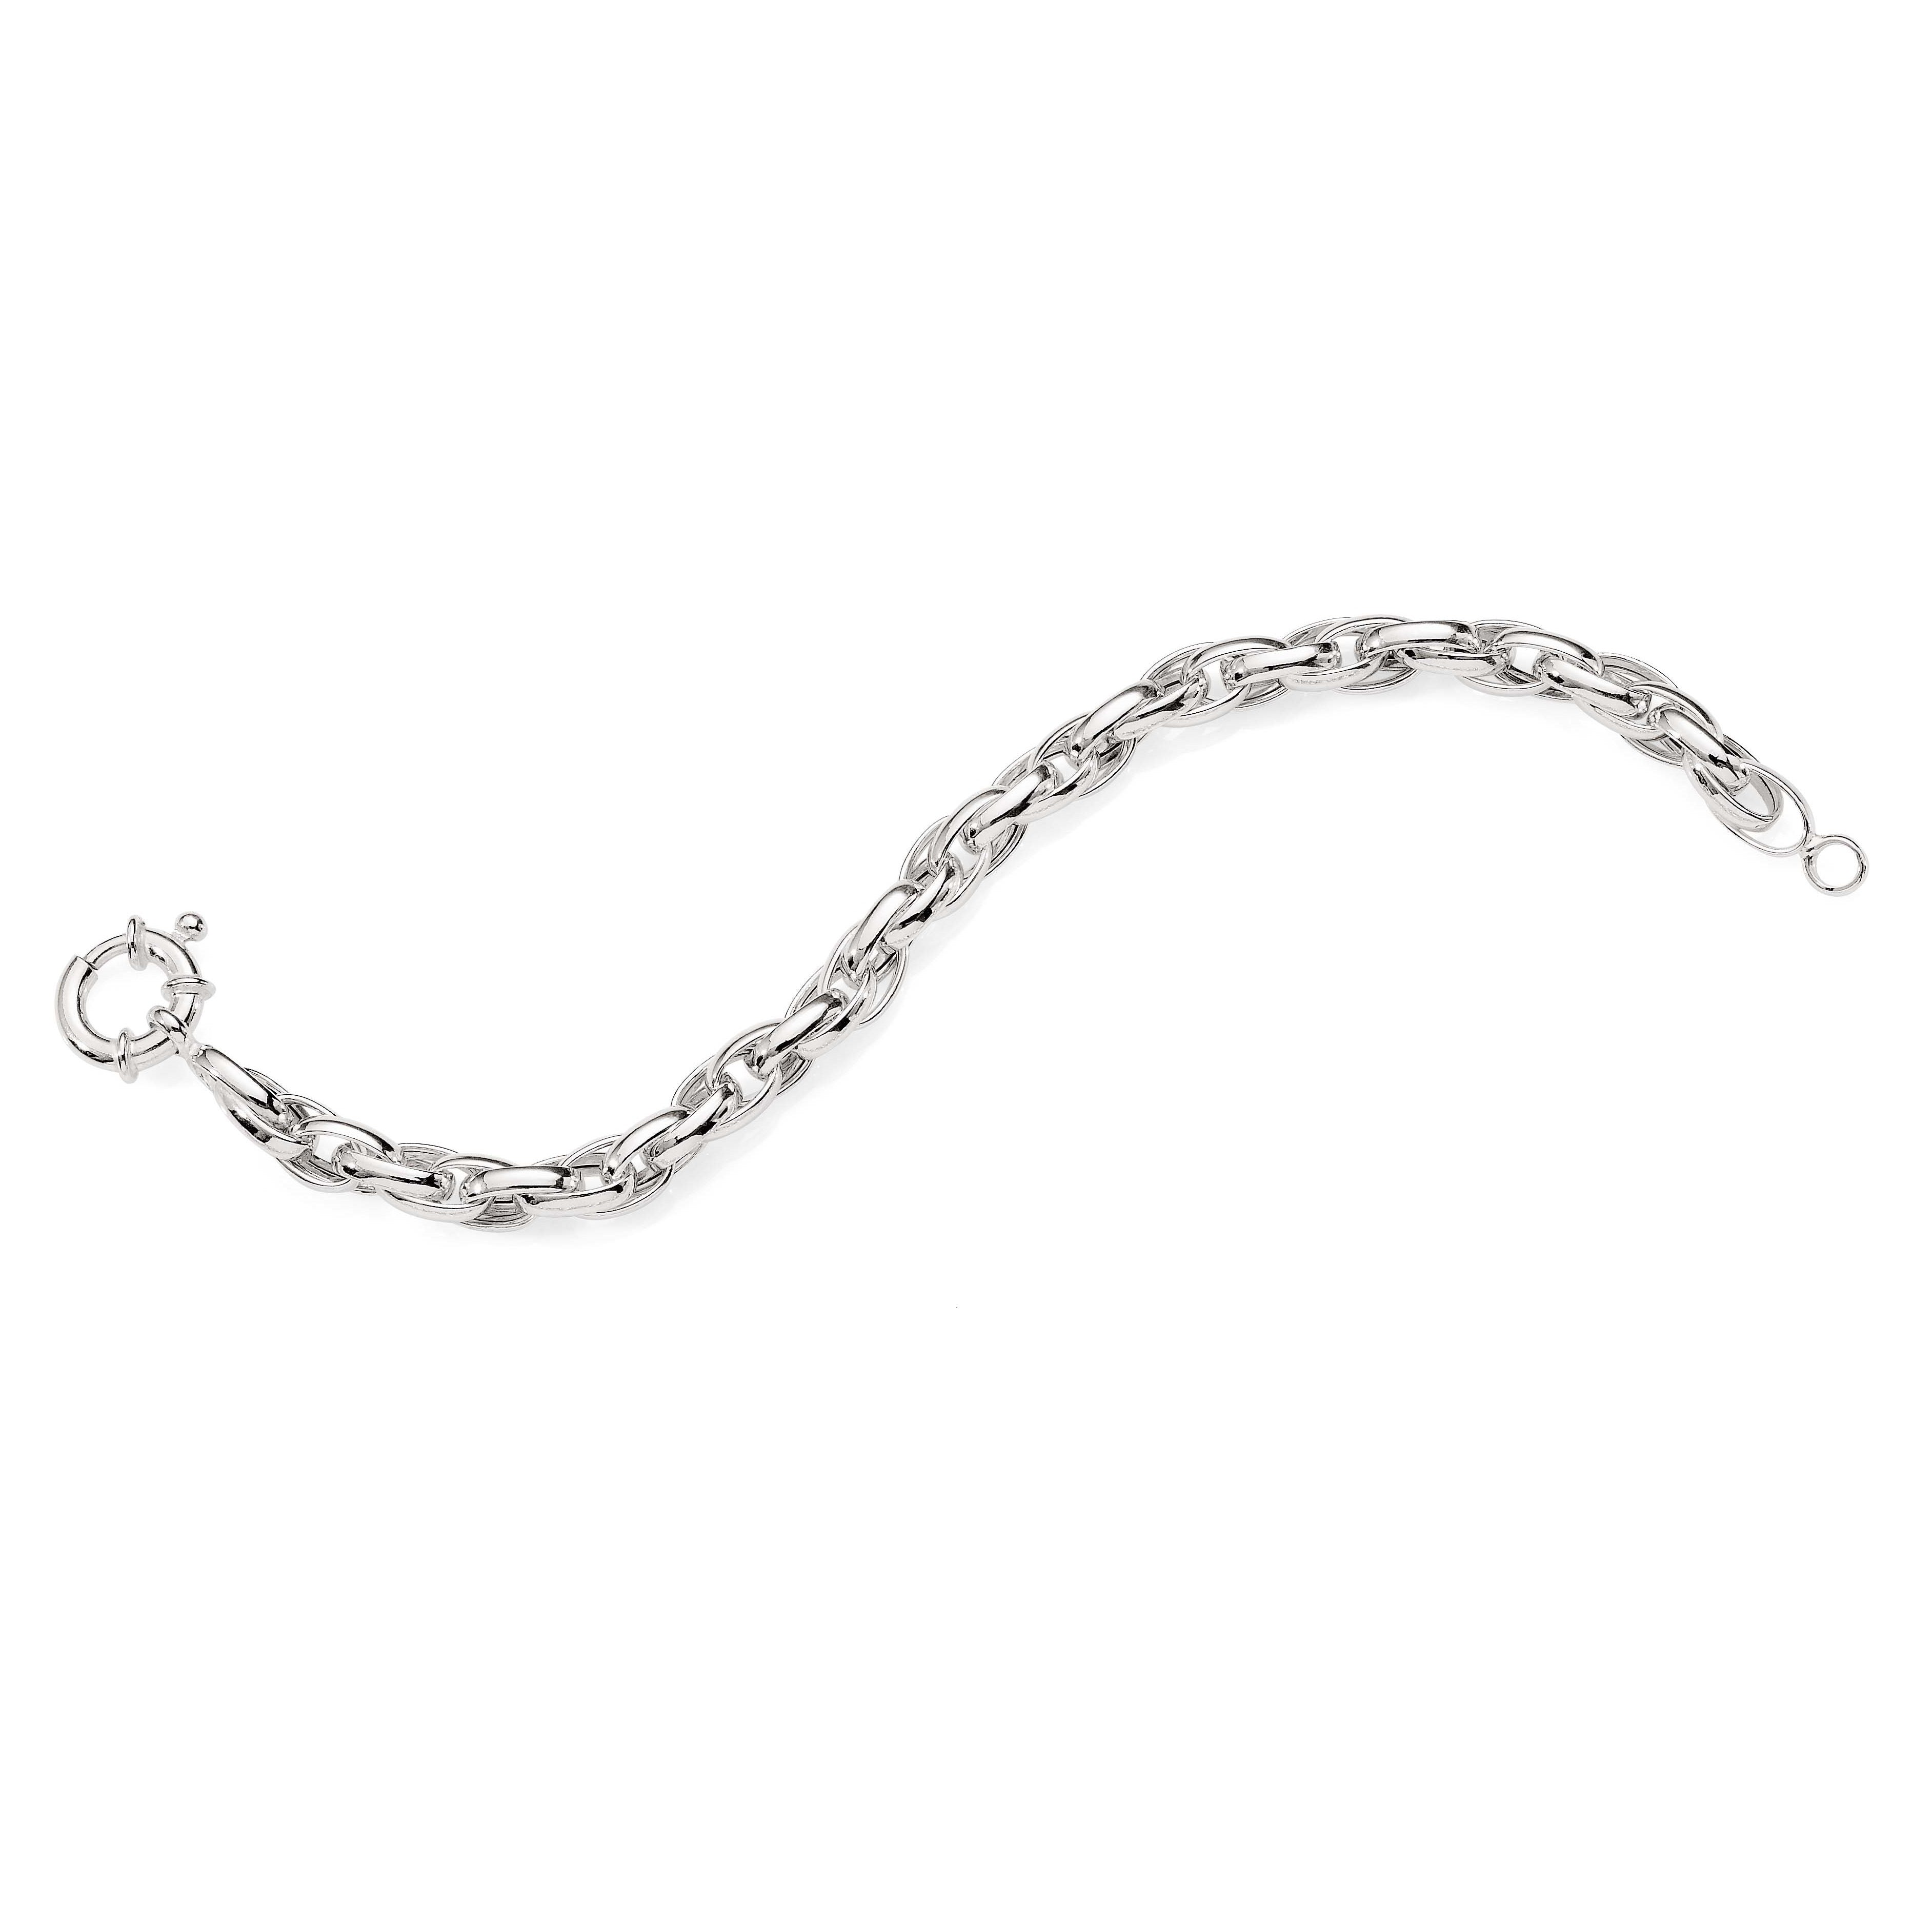 Silver oval belcher interlock Bracelet